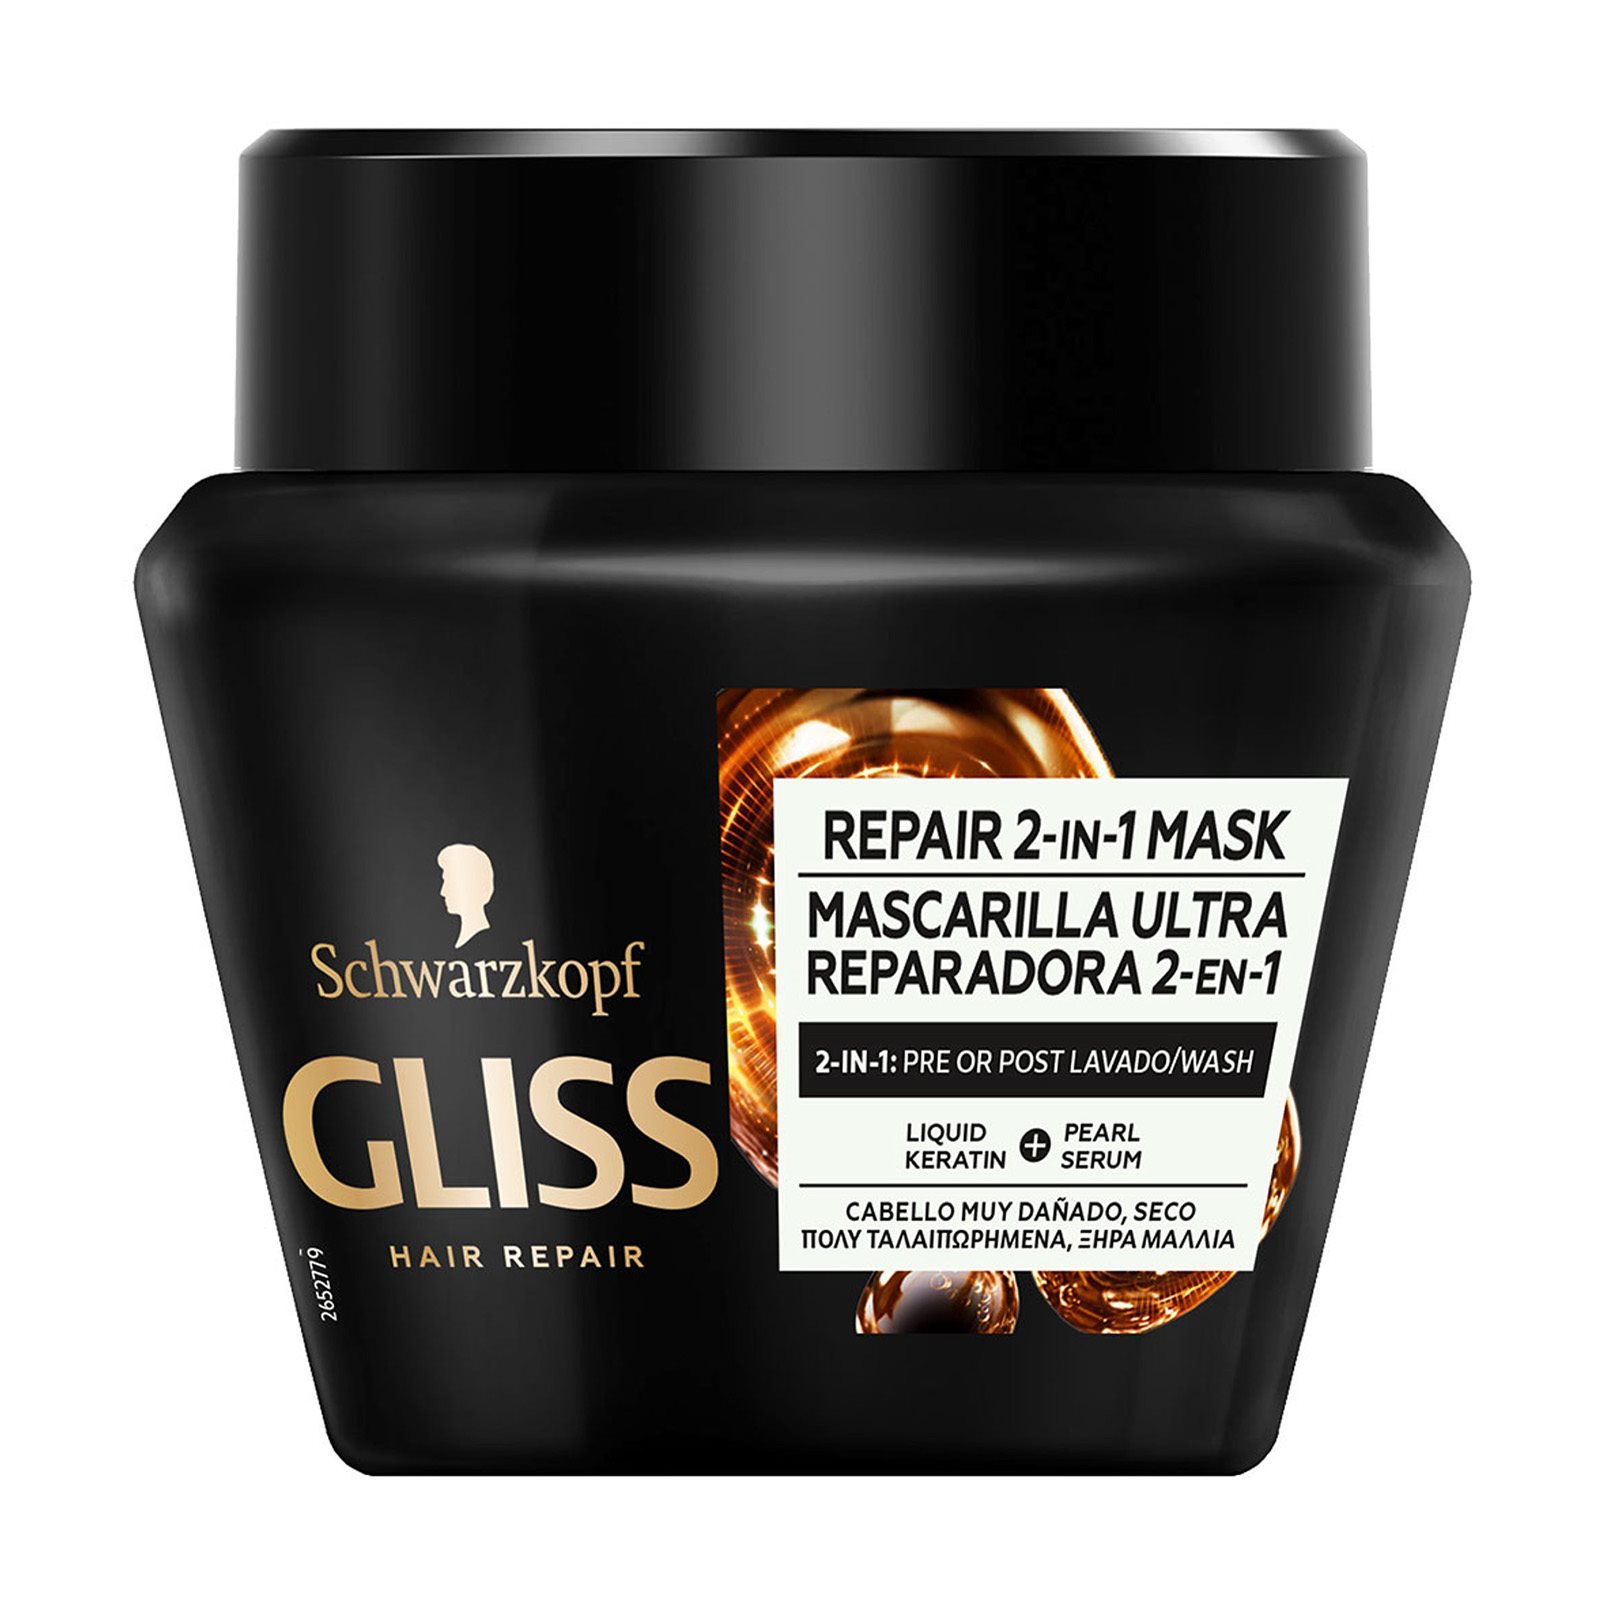 Маска для сильно поврежденных. Маска для волос Schwarzkopf Gliss strength 2-in-1 treatment. Gliss Kur маска для волос. Gliss Kur экстремальное восстановление. Gliss Kur маска экстремальное восстановление.